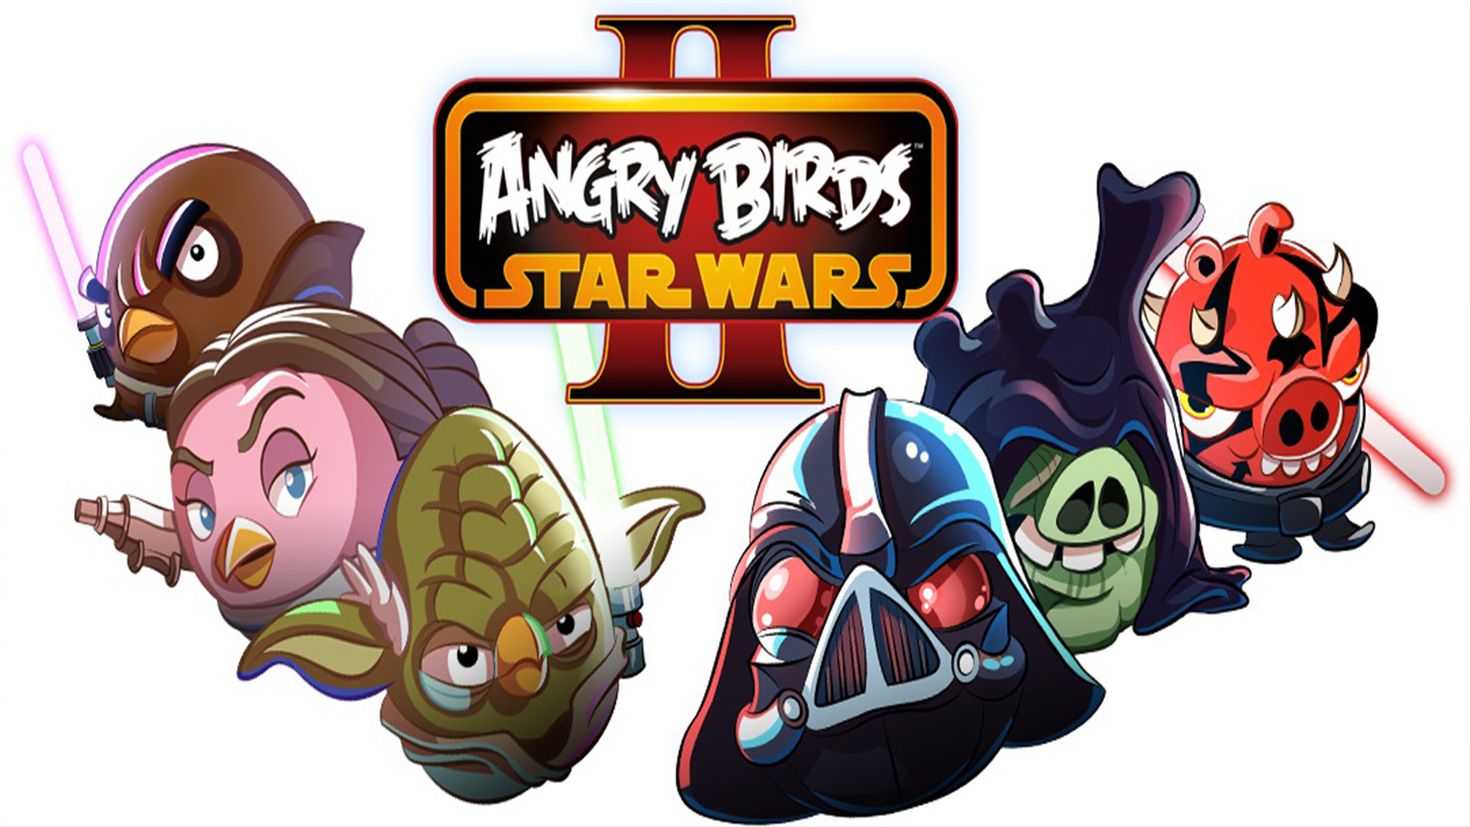 Angry birds star wars андроид. Энгри бердз Стар ВАРС. Звездные войны Энгри Бердс Стар ВАРС 2. Энгри бердз Звездные войны 2. Энгри бёрдс Стар ворс.